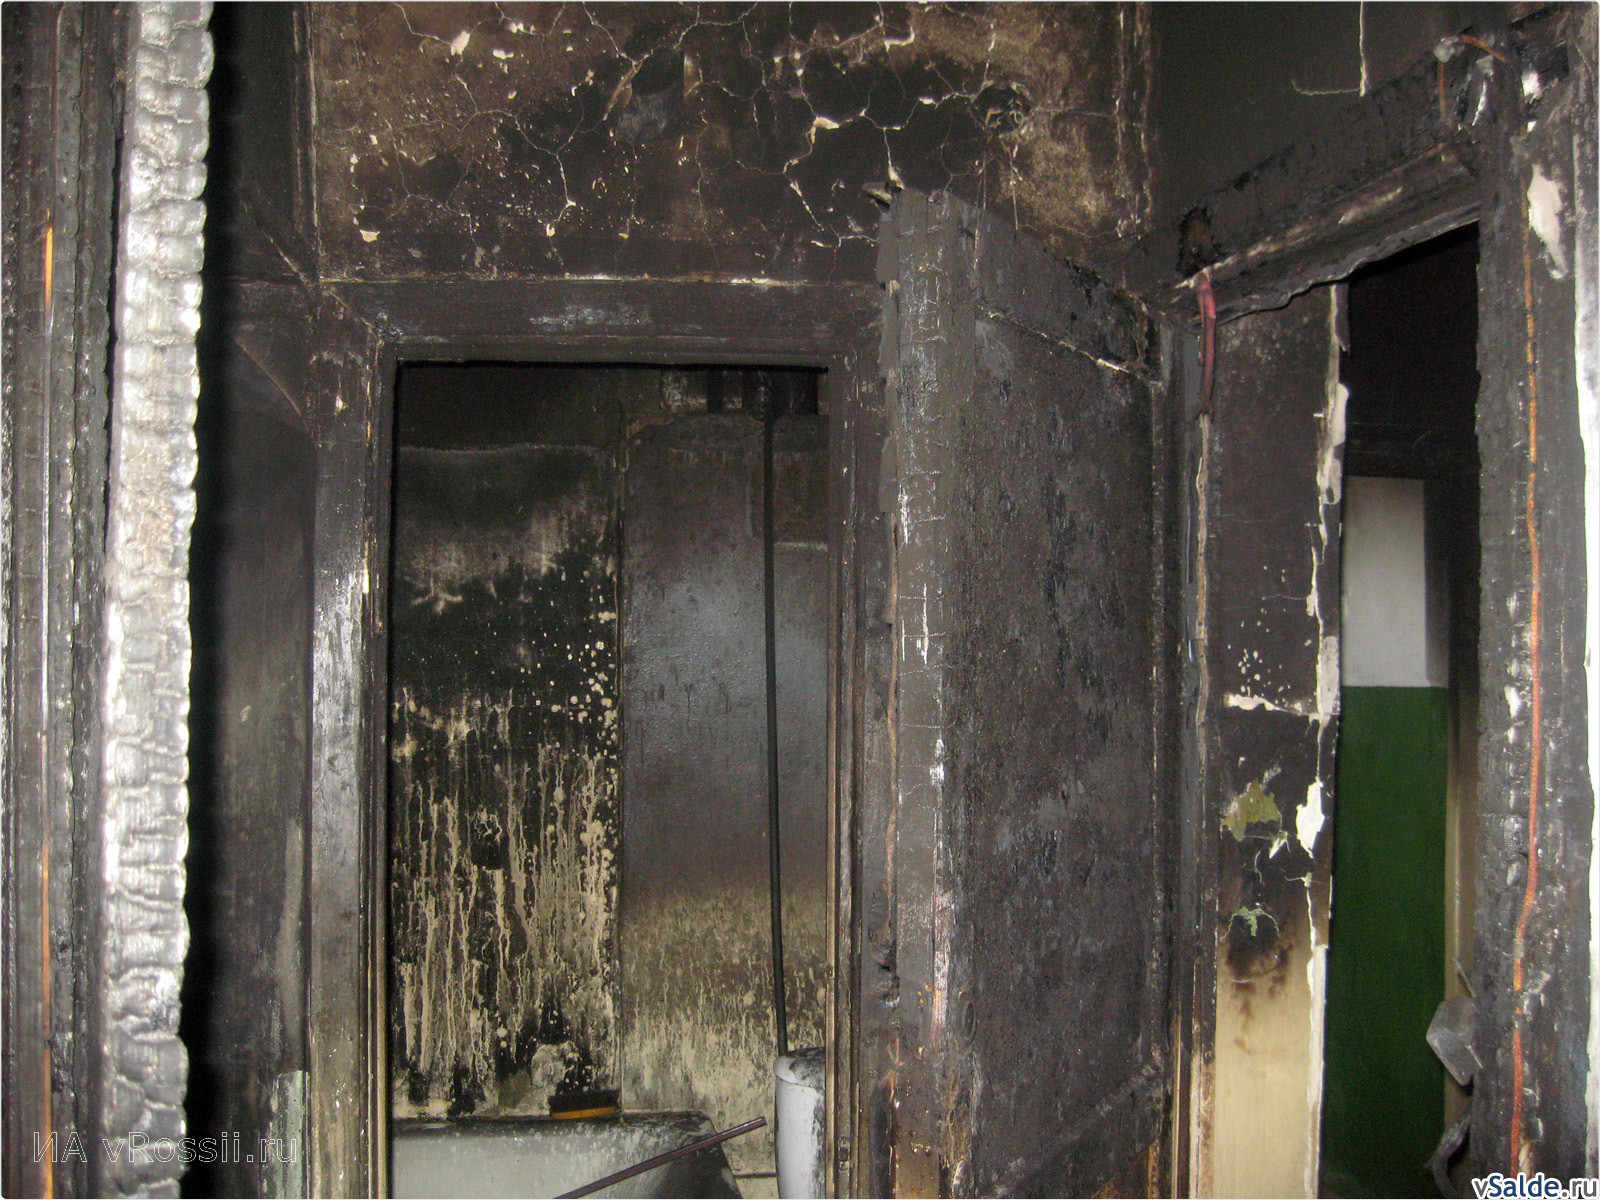 Подъезд после пожара. Сгоревшая входная дверь. Дверь после пожара. Сгоревшие подъездные двери.